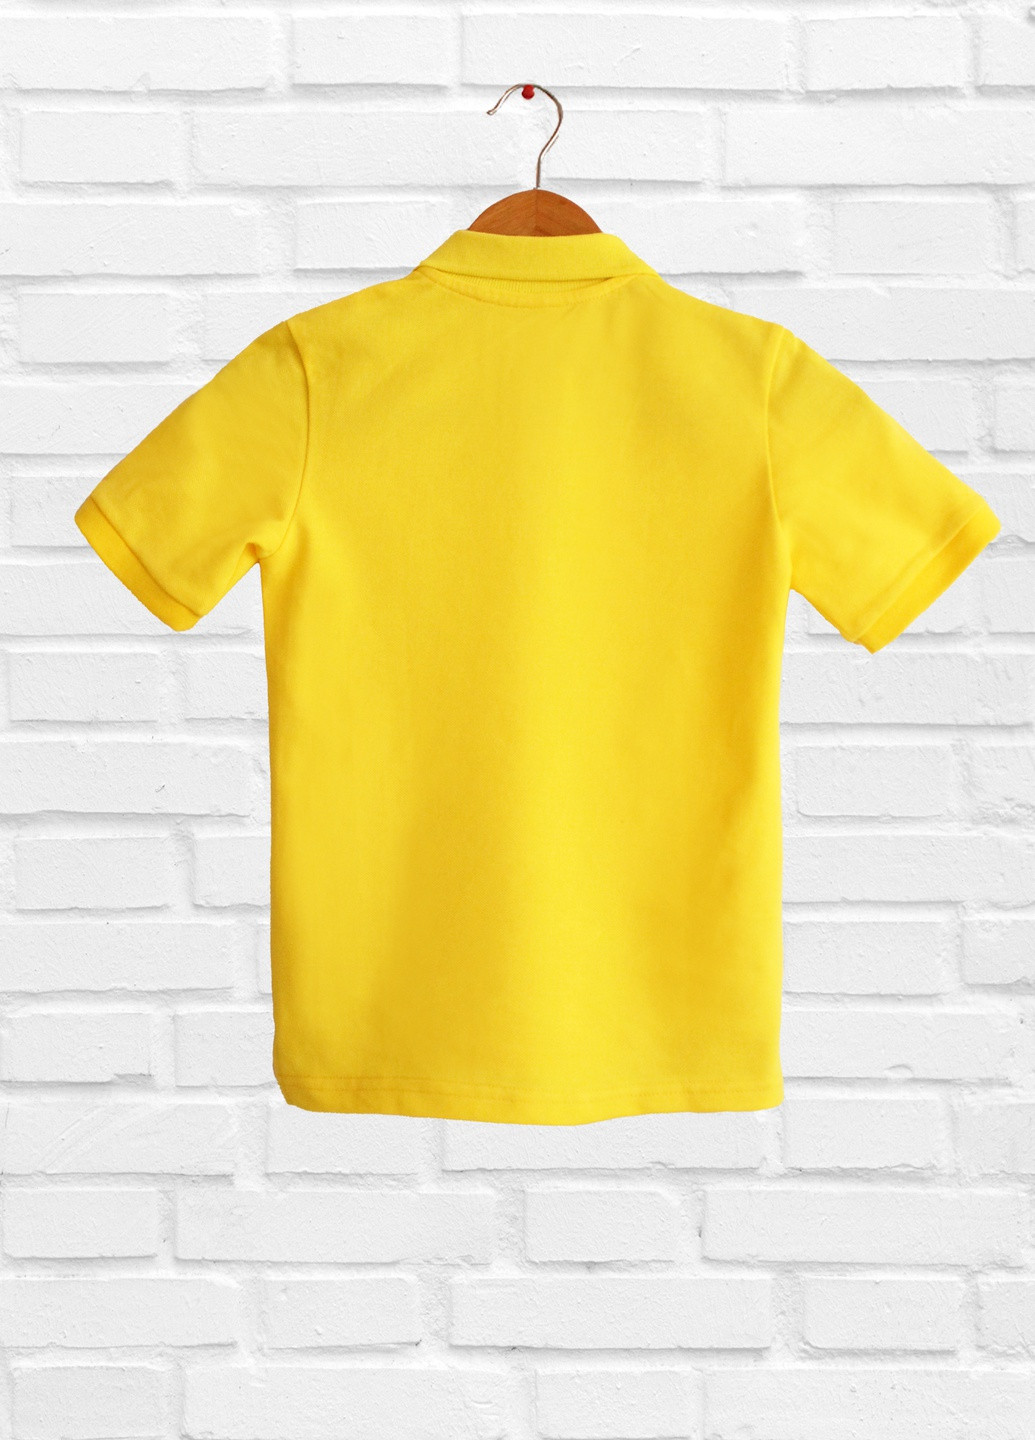 Світло-жовта літня футболка дитяча, світло жовта, бавовняна дм471/1-43 Malta